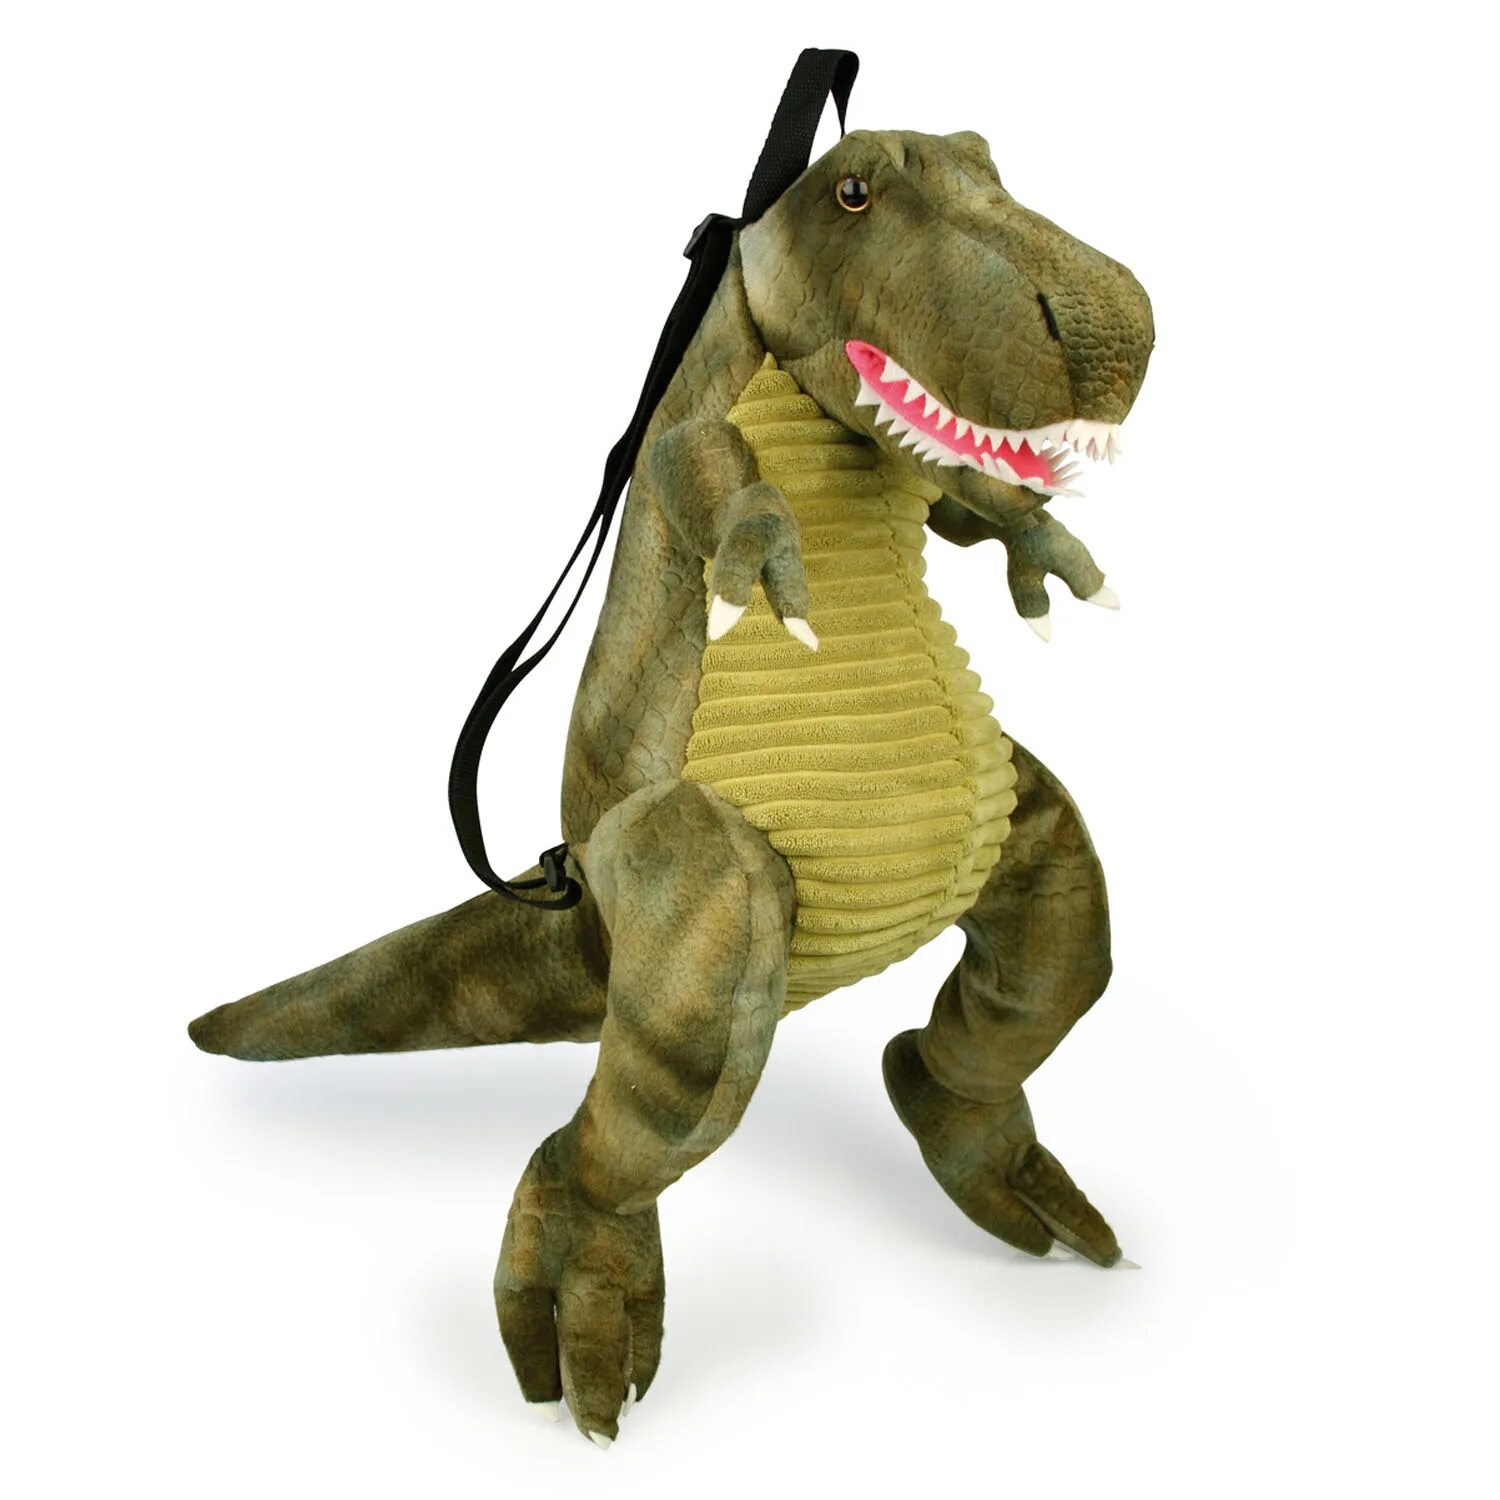 Рюкзак игрушка динозавр. Рюкзак в виде динозавра. Рюкзак в форме динозавра. Детский рюкзак в виде динозавра. Динозавр форма